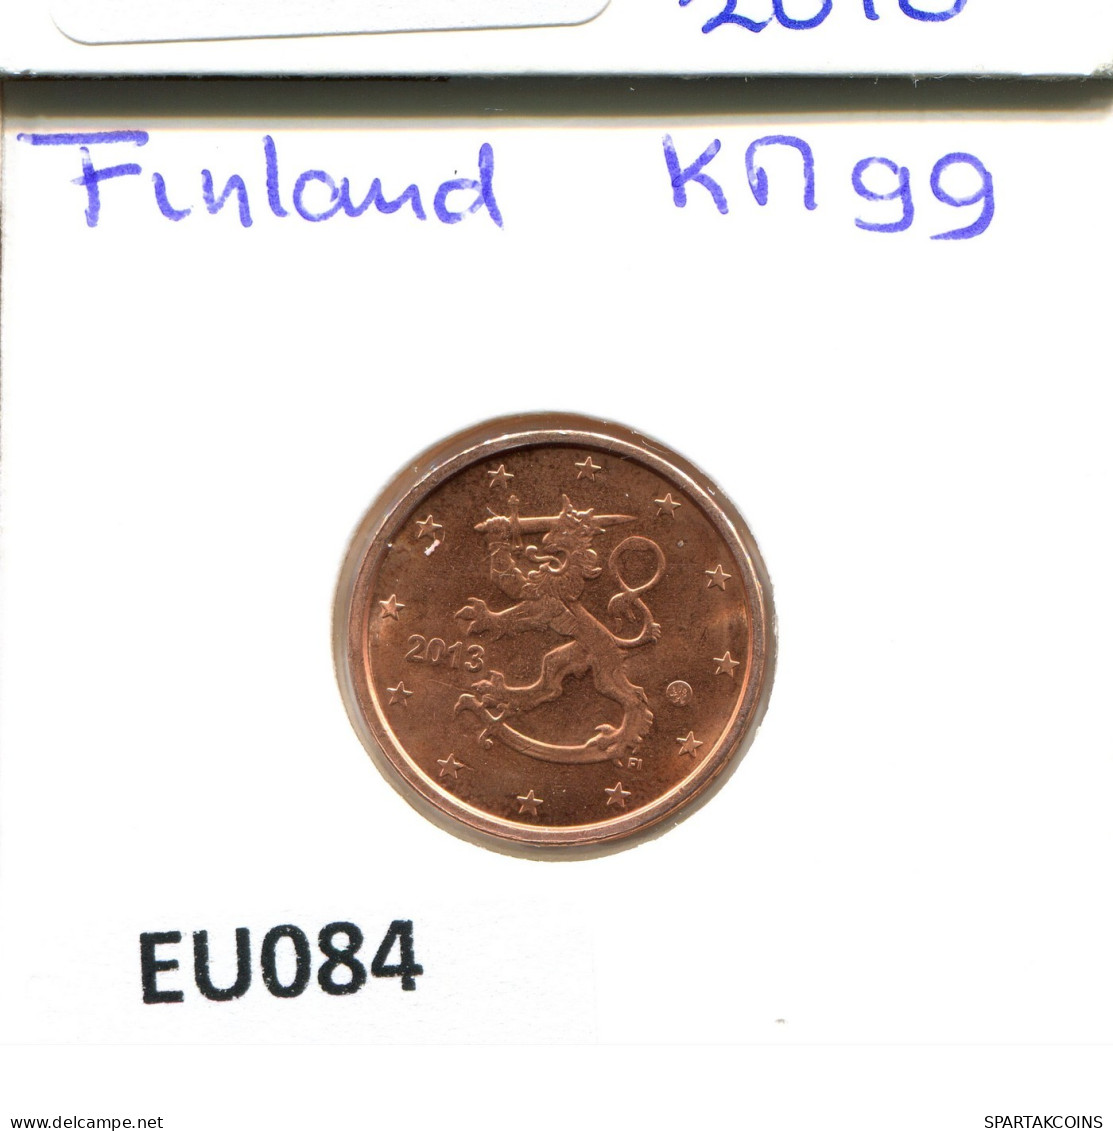 2 EURO CENTS 2013 FINLAND Coin #EU084.U.A - Finlandia